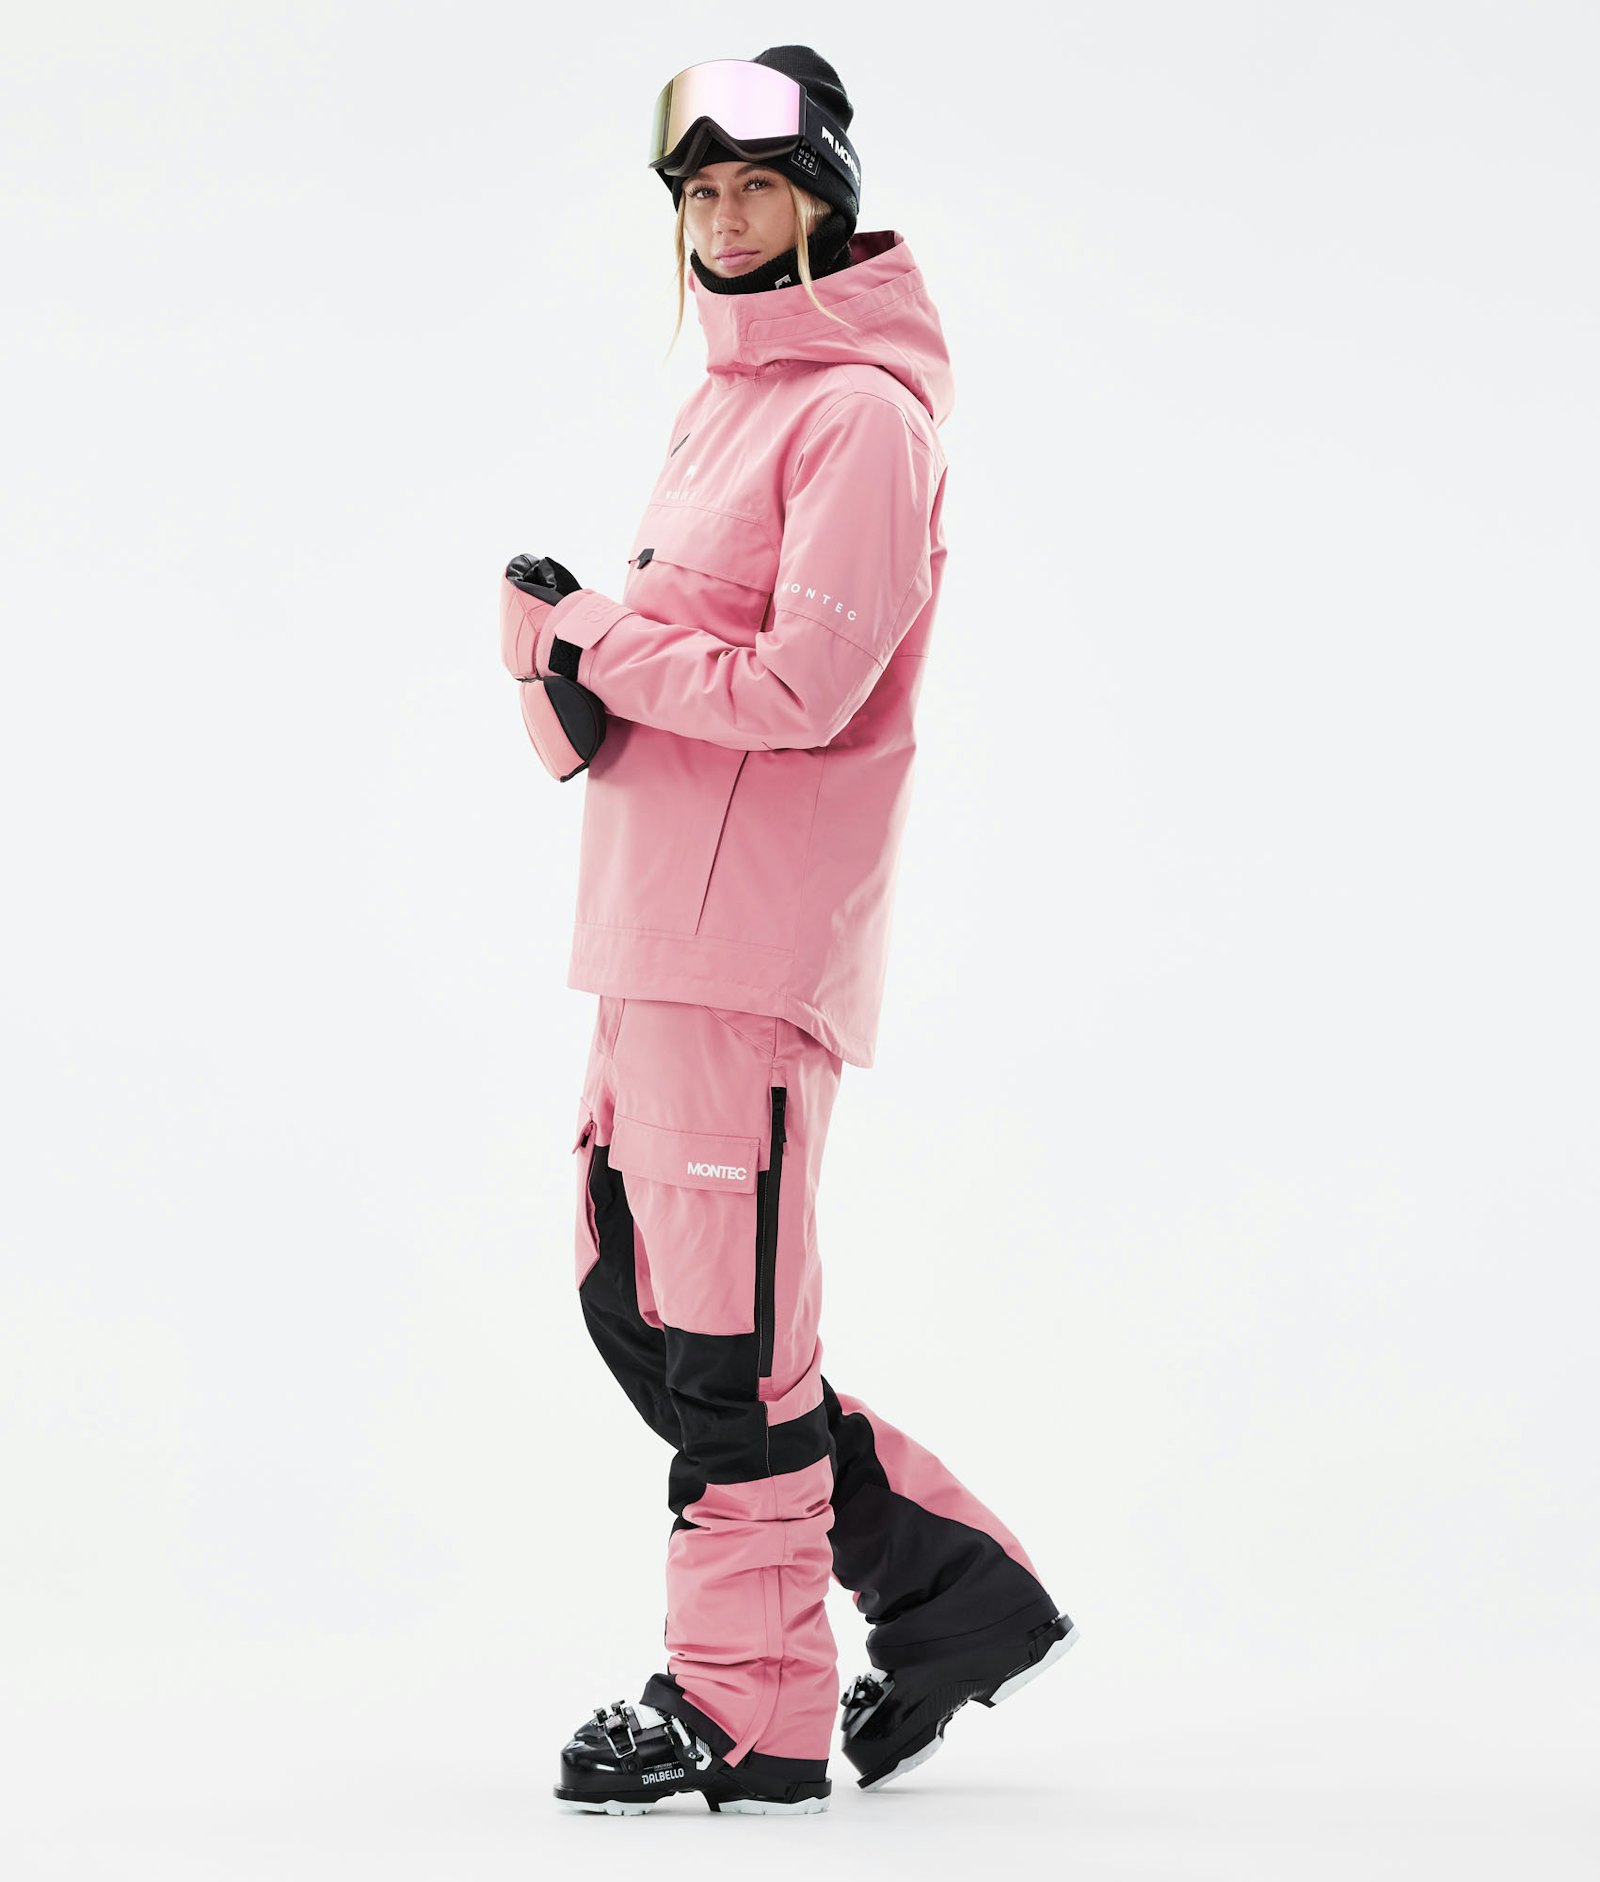 Montec Dune W 2021 Veste de Ski Femme Pink